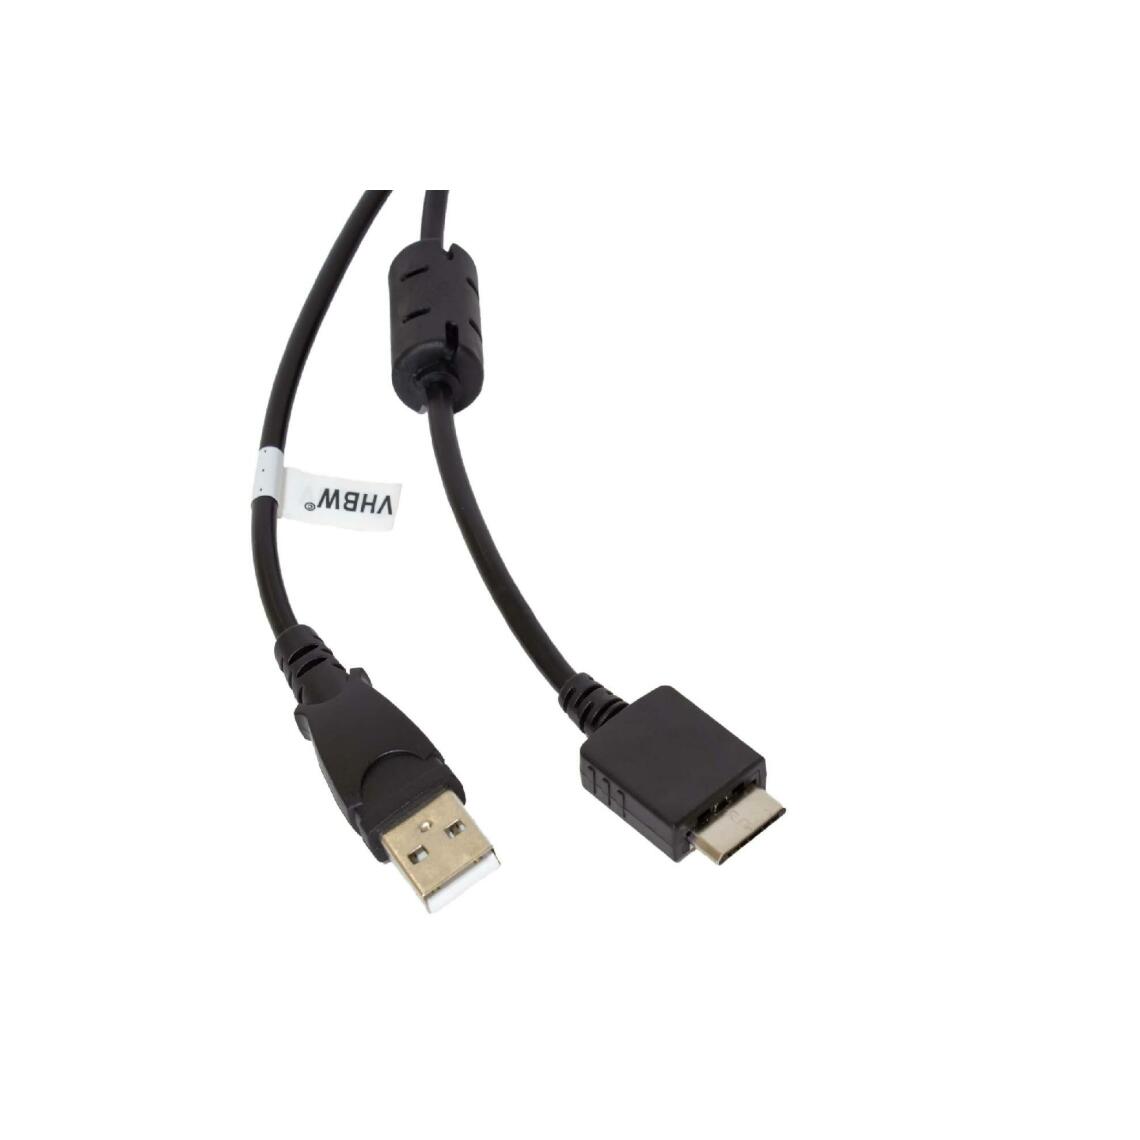 Vhbw - vhbw câble de données USB (type A sur lecteur MP3) câble de chargement compatible avec Sony Walkman NWZ-S638FREDWM lecteur MP3 - noir, 150cm - Alimentation modulaire